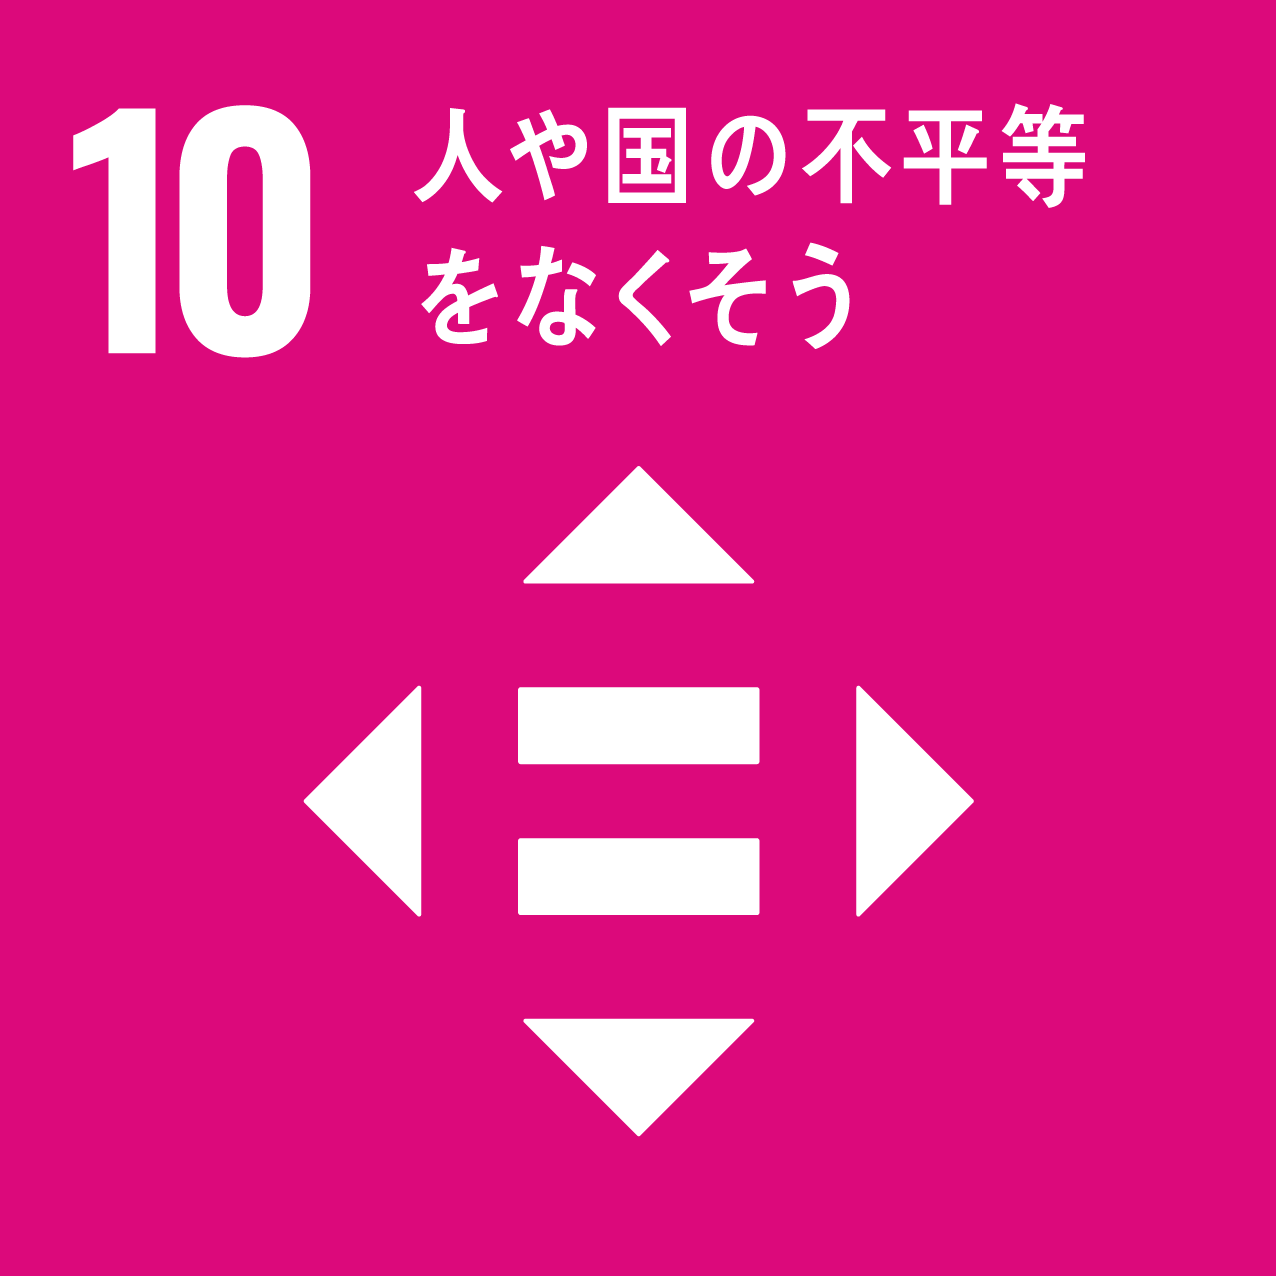 10 「人や国の不平等をなくそう」のロゴ画像